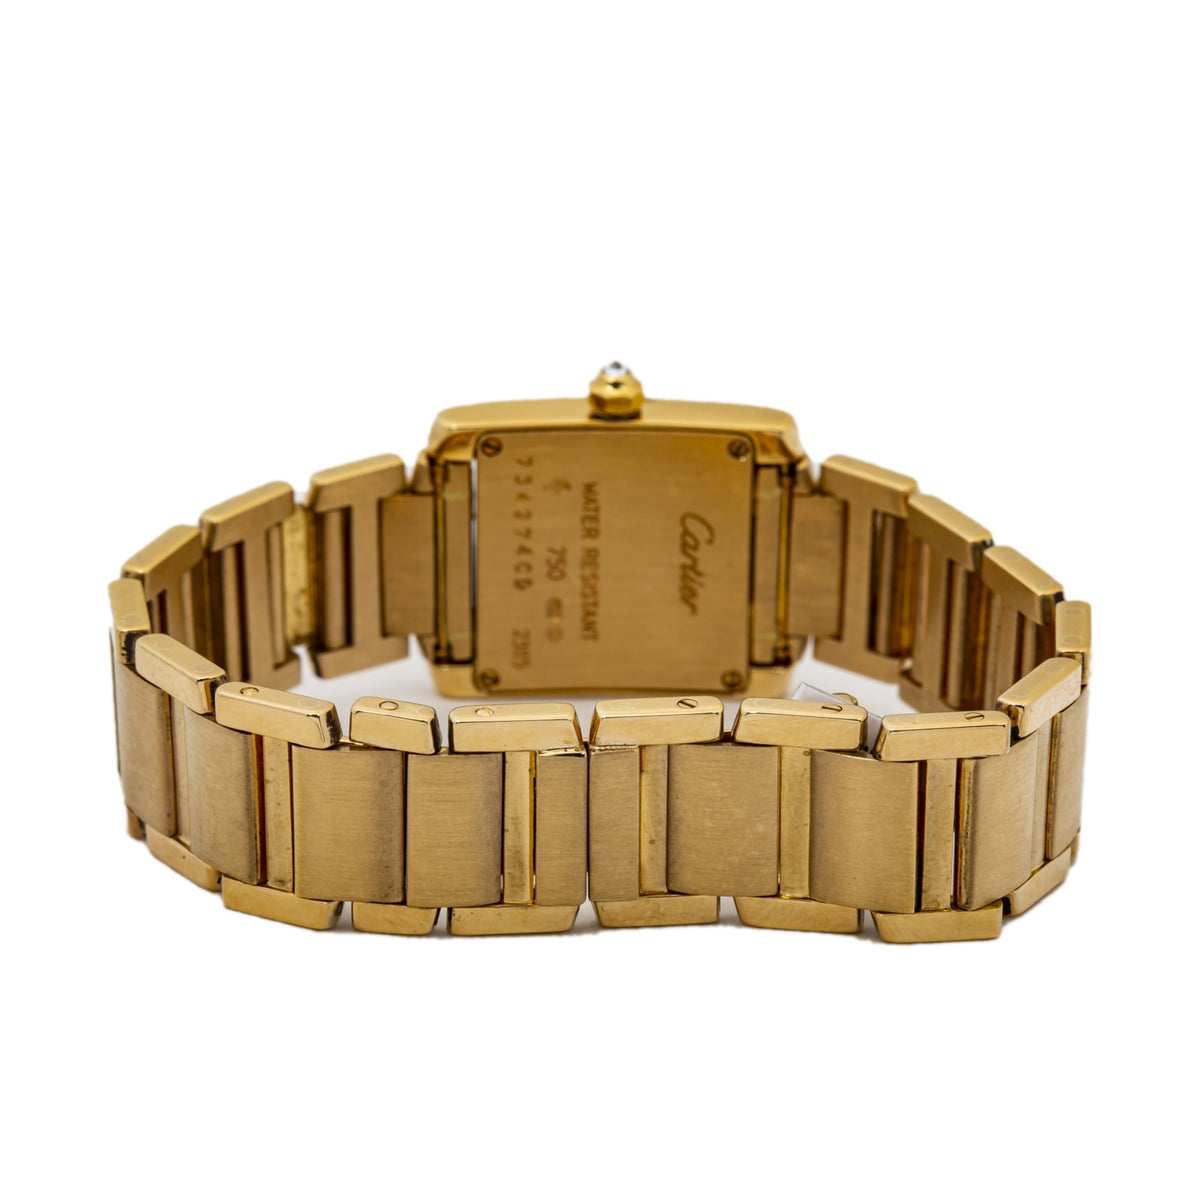 Cartier Tank Francaise 2385 18k Gold Diamond Bezel Quartz Ladie's Watch 20mm